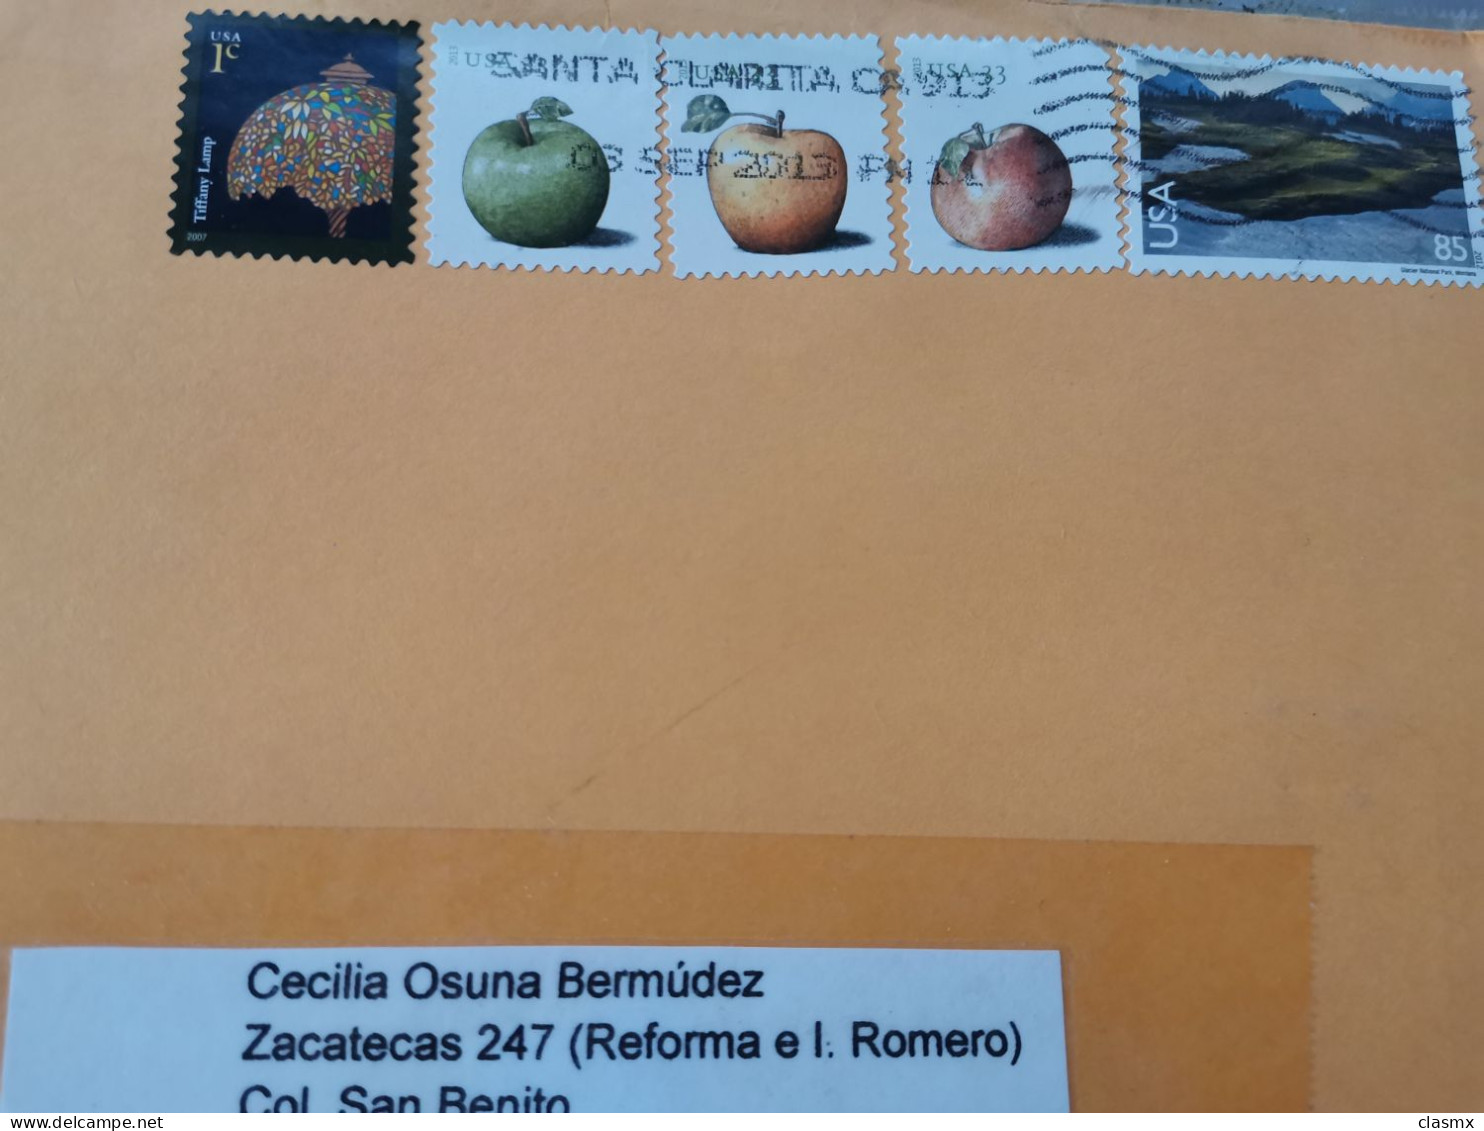 USA 2013 Clear Postmark Apples Montana Stamps - Postal History